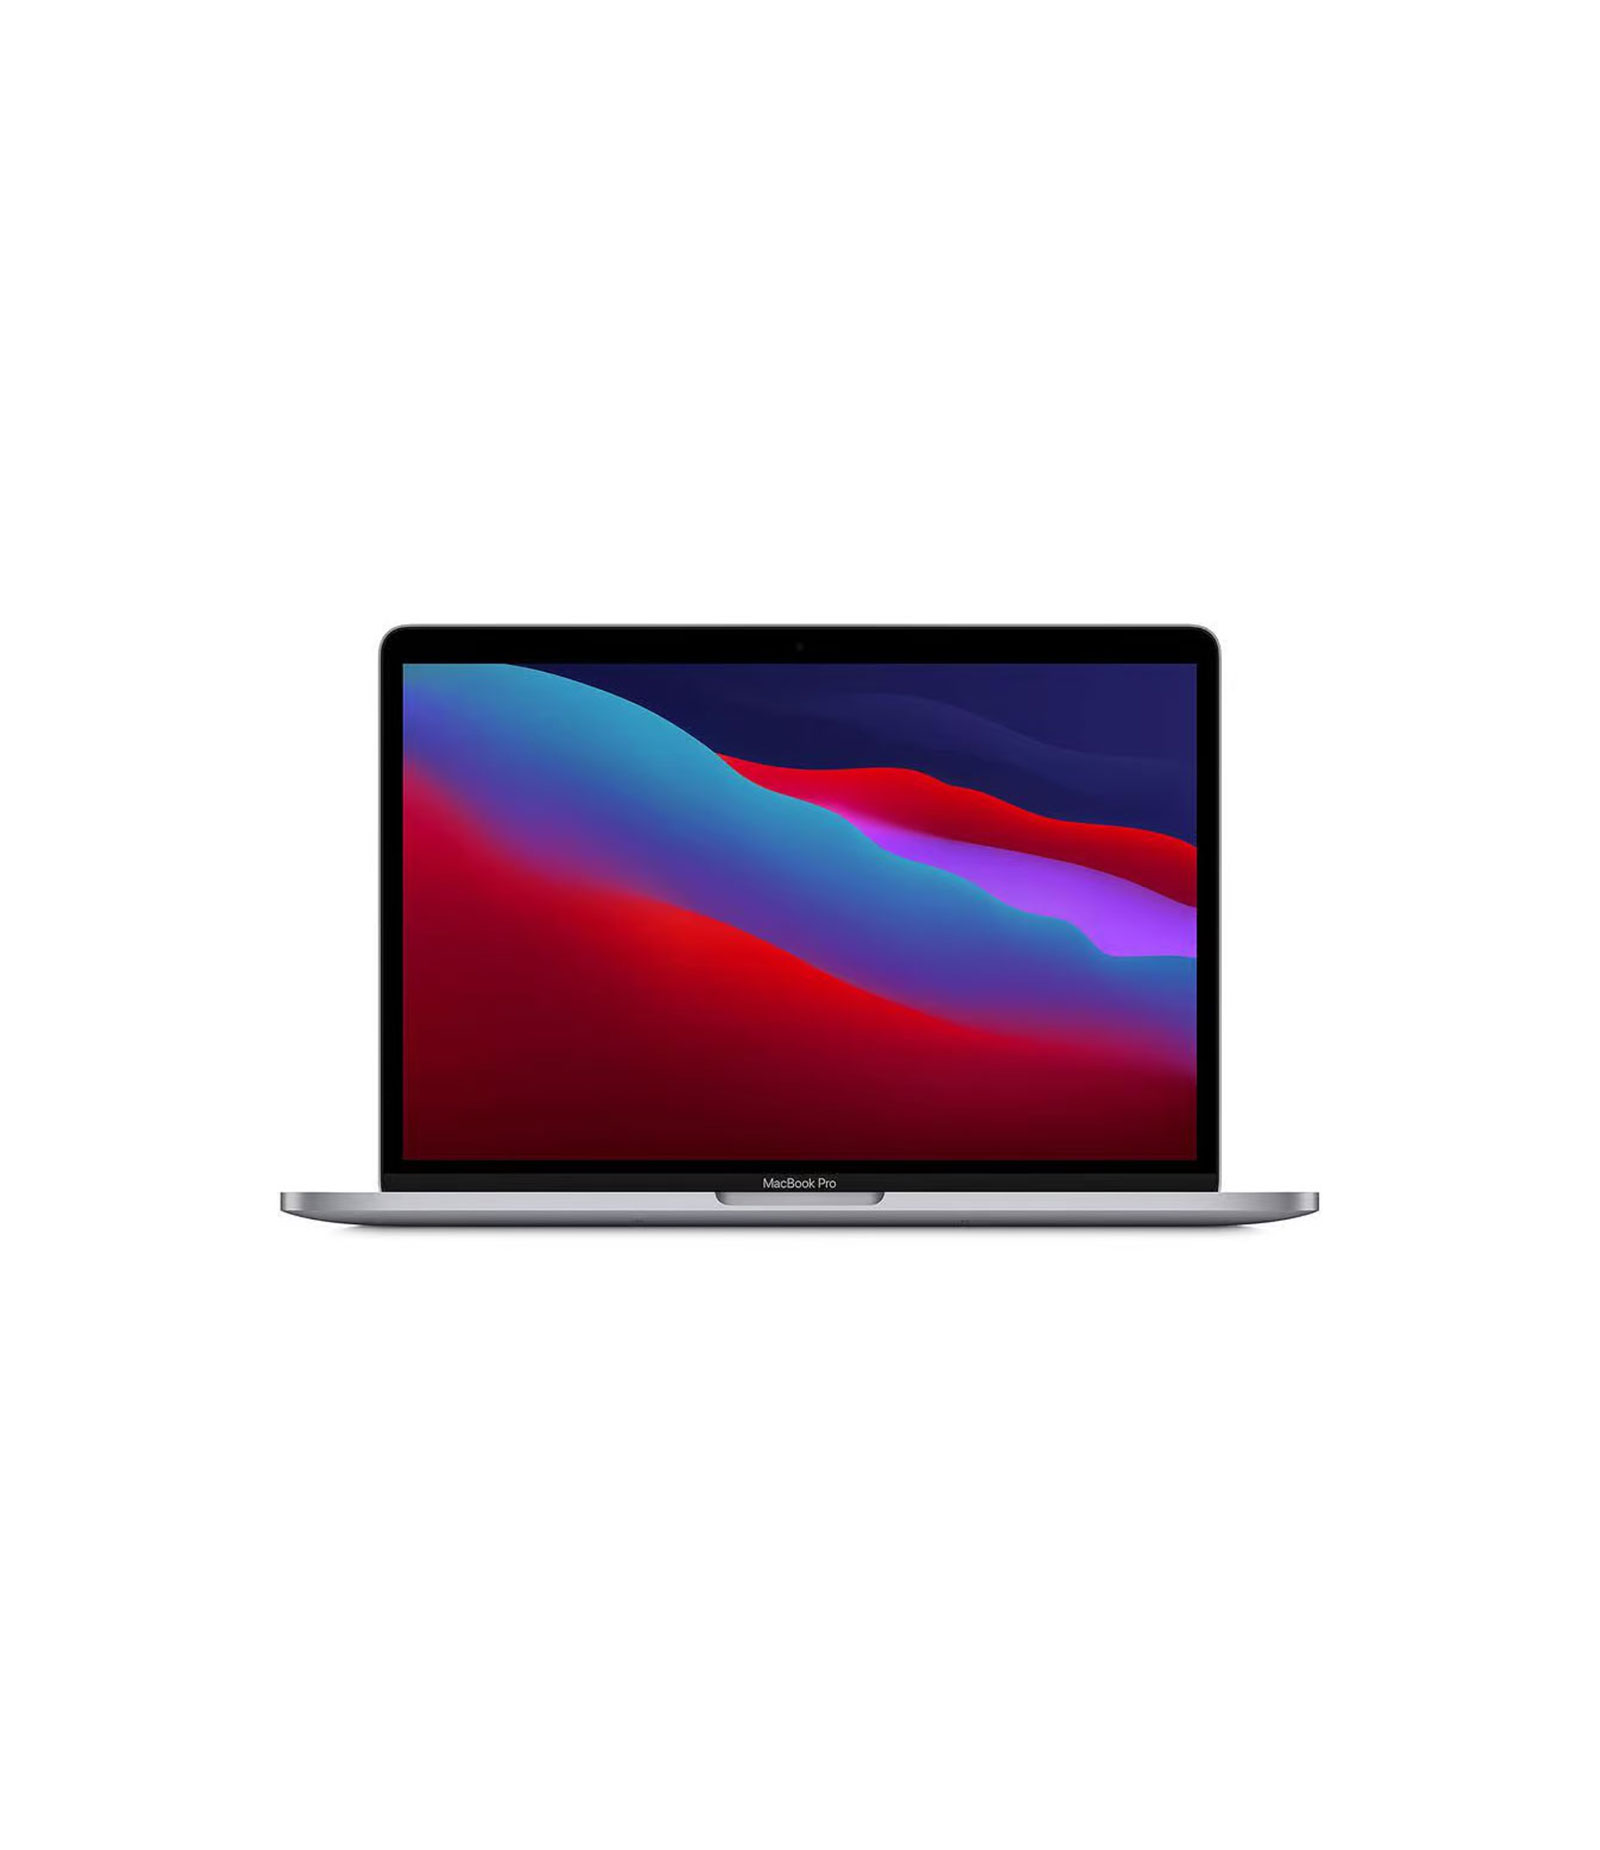 MacBook Pro (13 pouces, M1, 2020)